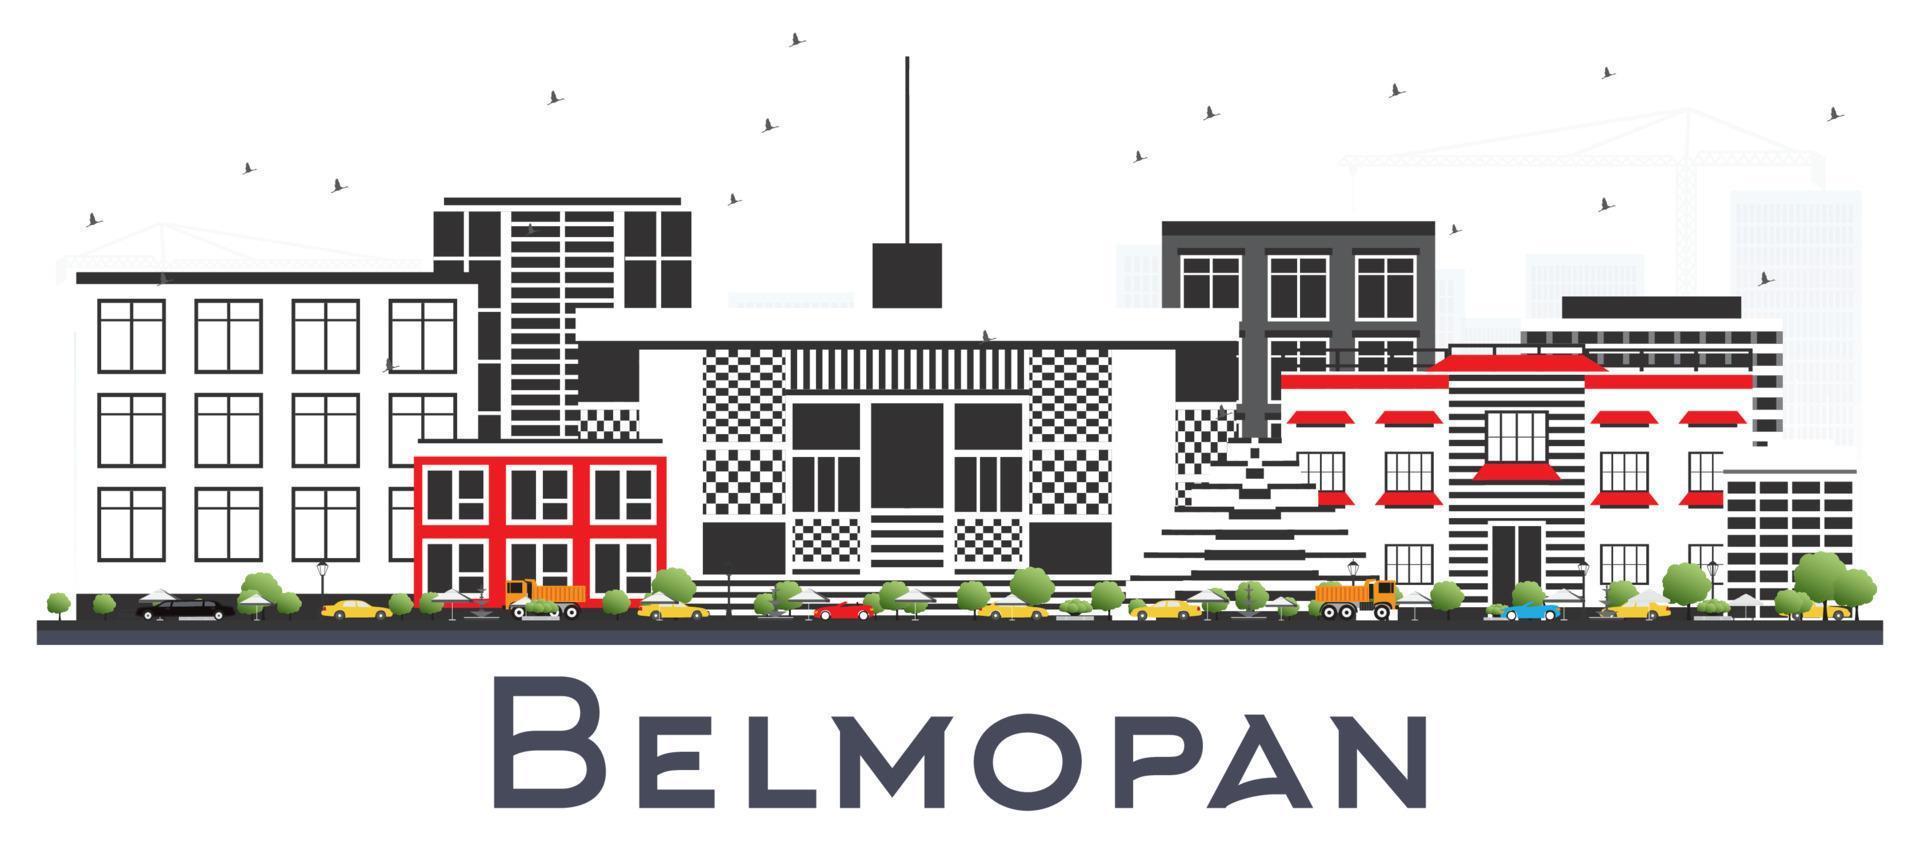 belmopan belize city skyline mit grauen gebäuden isoliert auf weiß. vektor